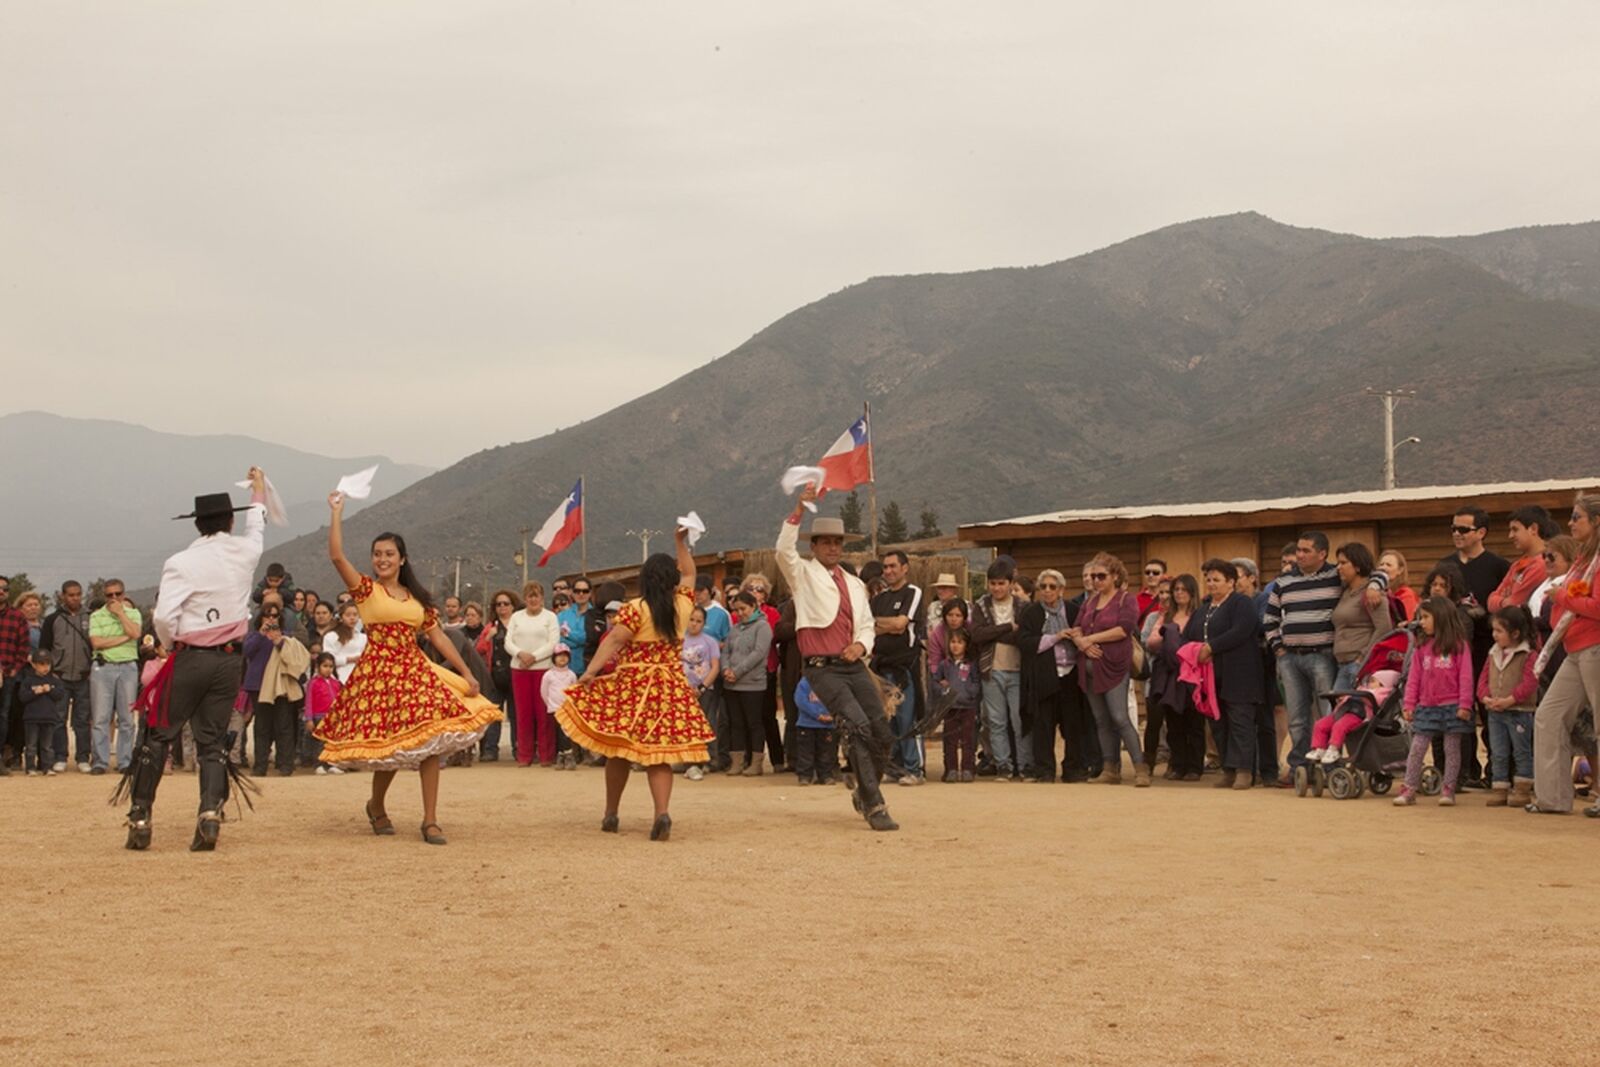 Dancing the Cueca at La Mansa Jarra in Olmué, Chile during Fiestas Patrias